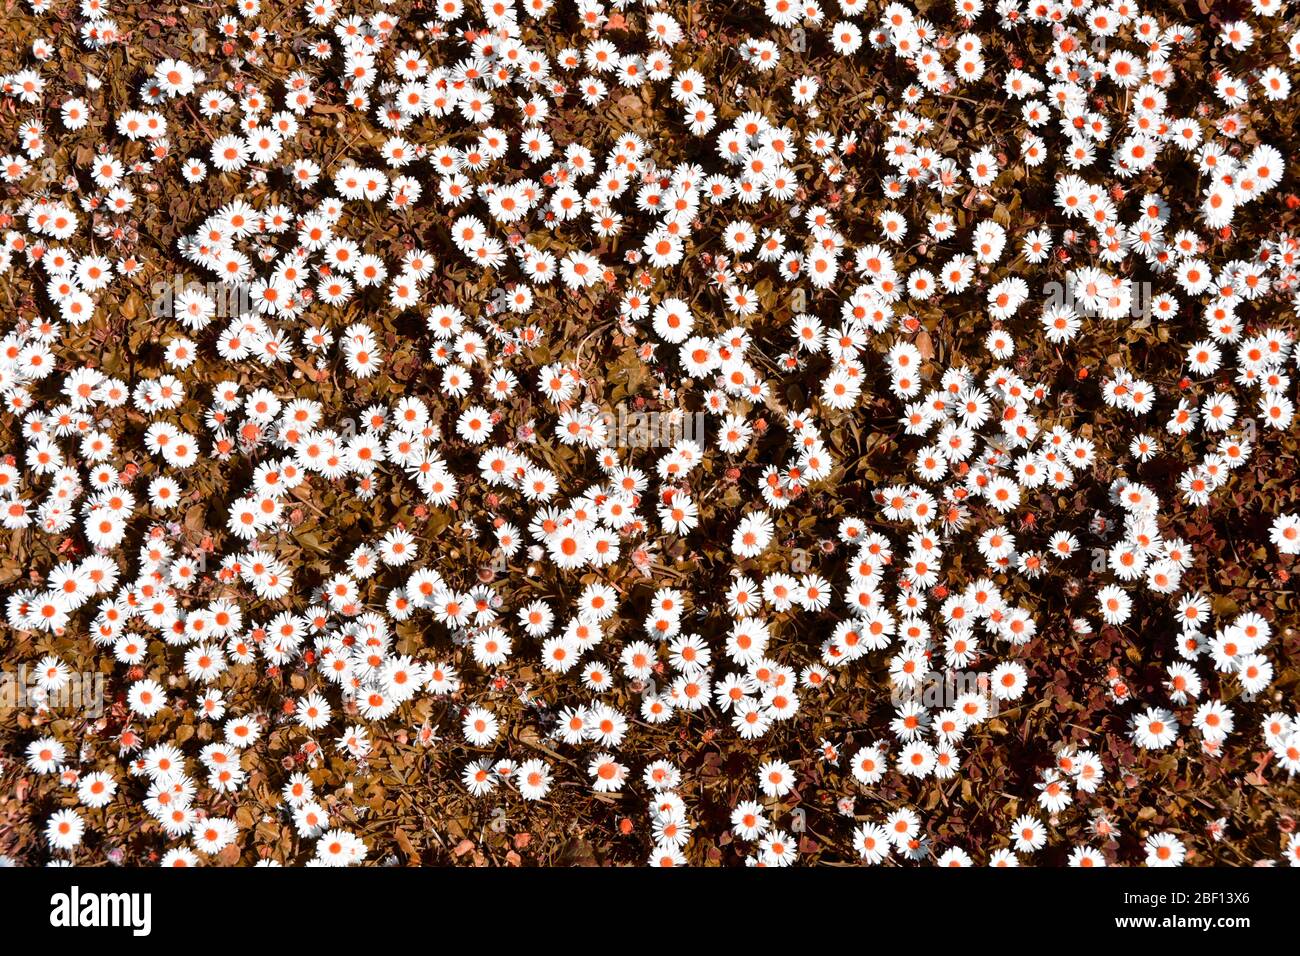 Abstraktes Hintergrundbild durch künstliche Farbmanipulation von Patch von Daises in einem Rasen mit weißen Gänseblümchen Köpfe orange Punkte & Gras UK erstellt Stockfoto